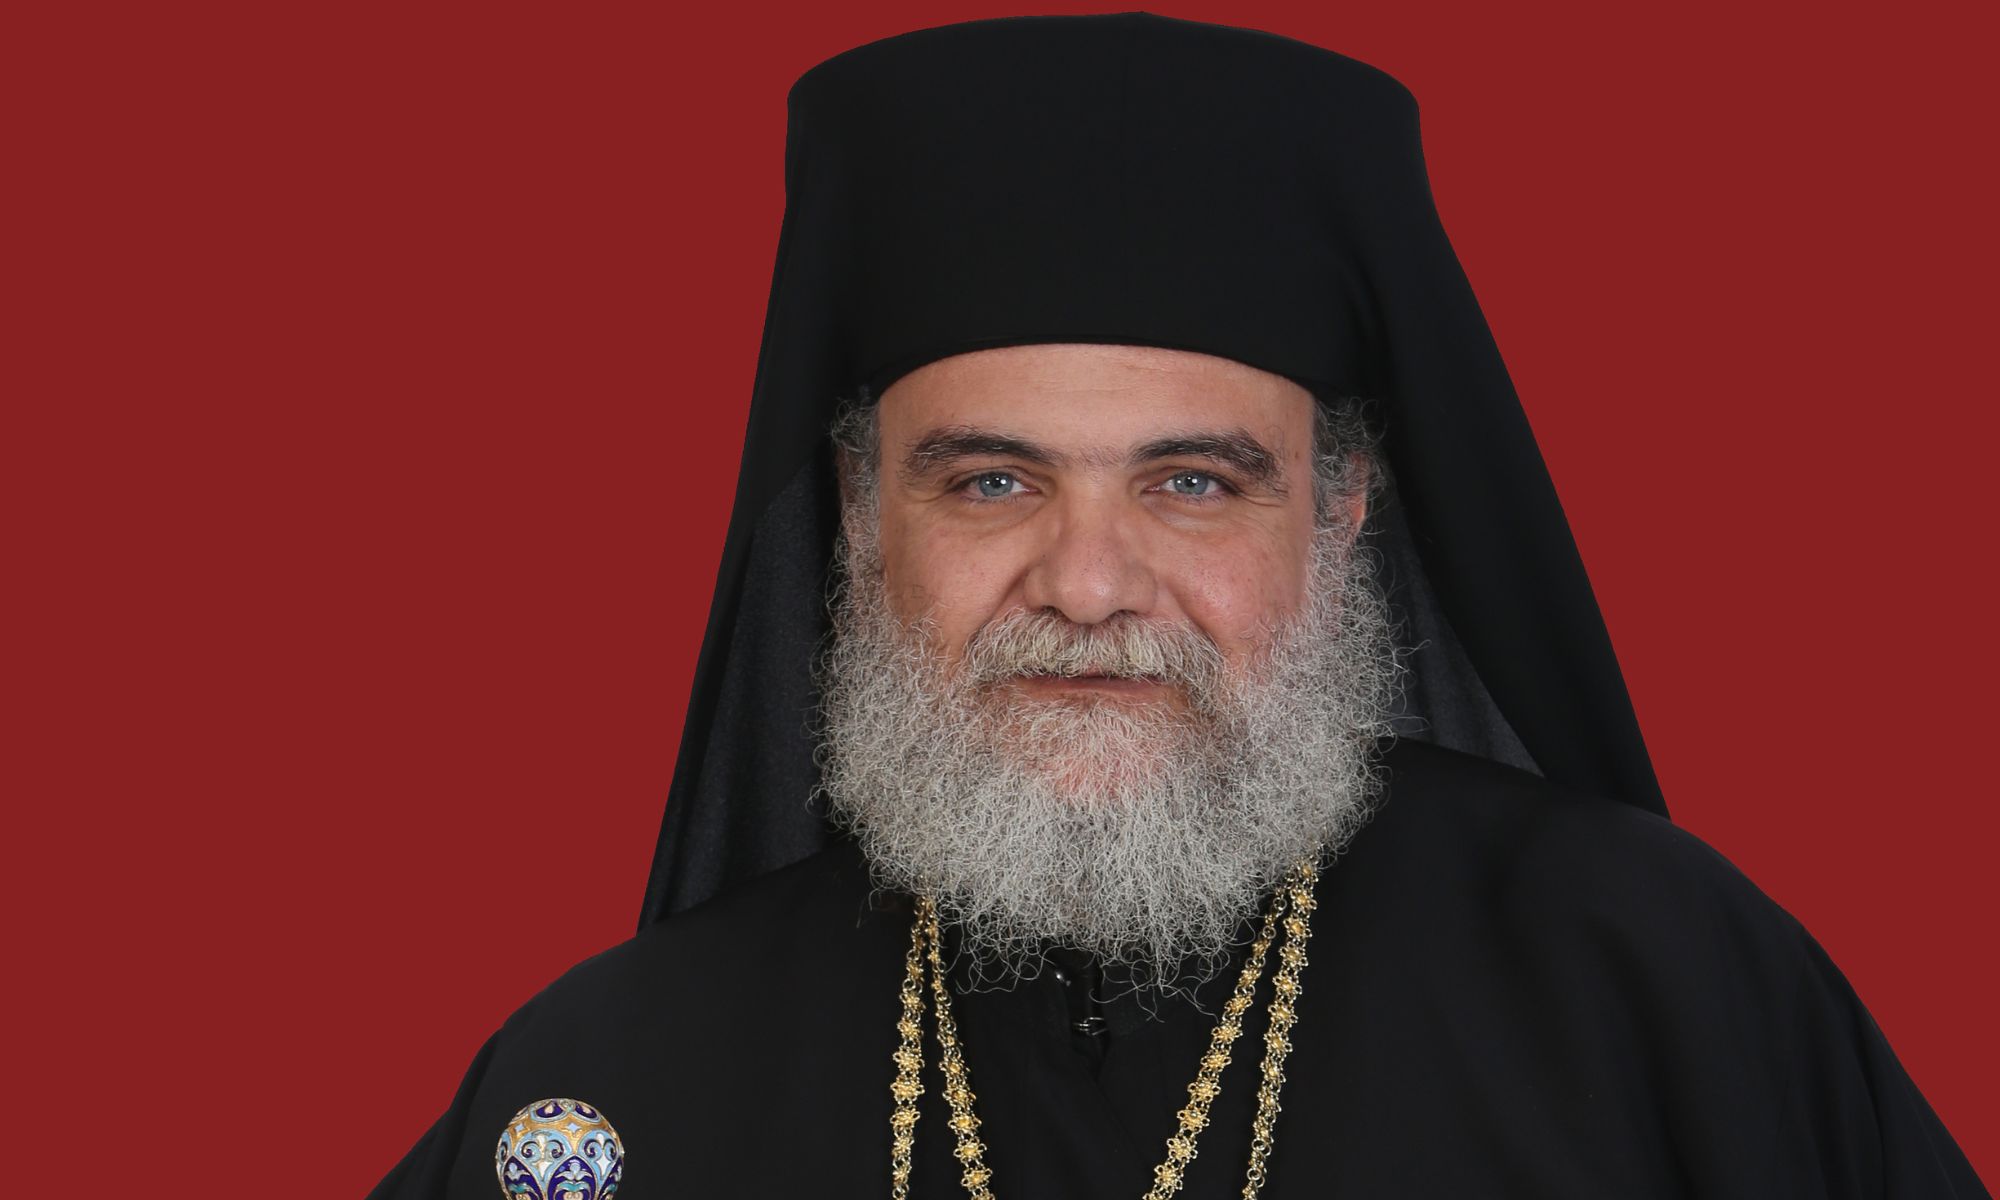 Αρχιεπισκοπικές εκλογές: Δήλωση στήριξης του Μητροπολίτη Ησαΐα Κυκκώτη για την εκλογή του